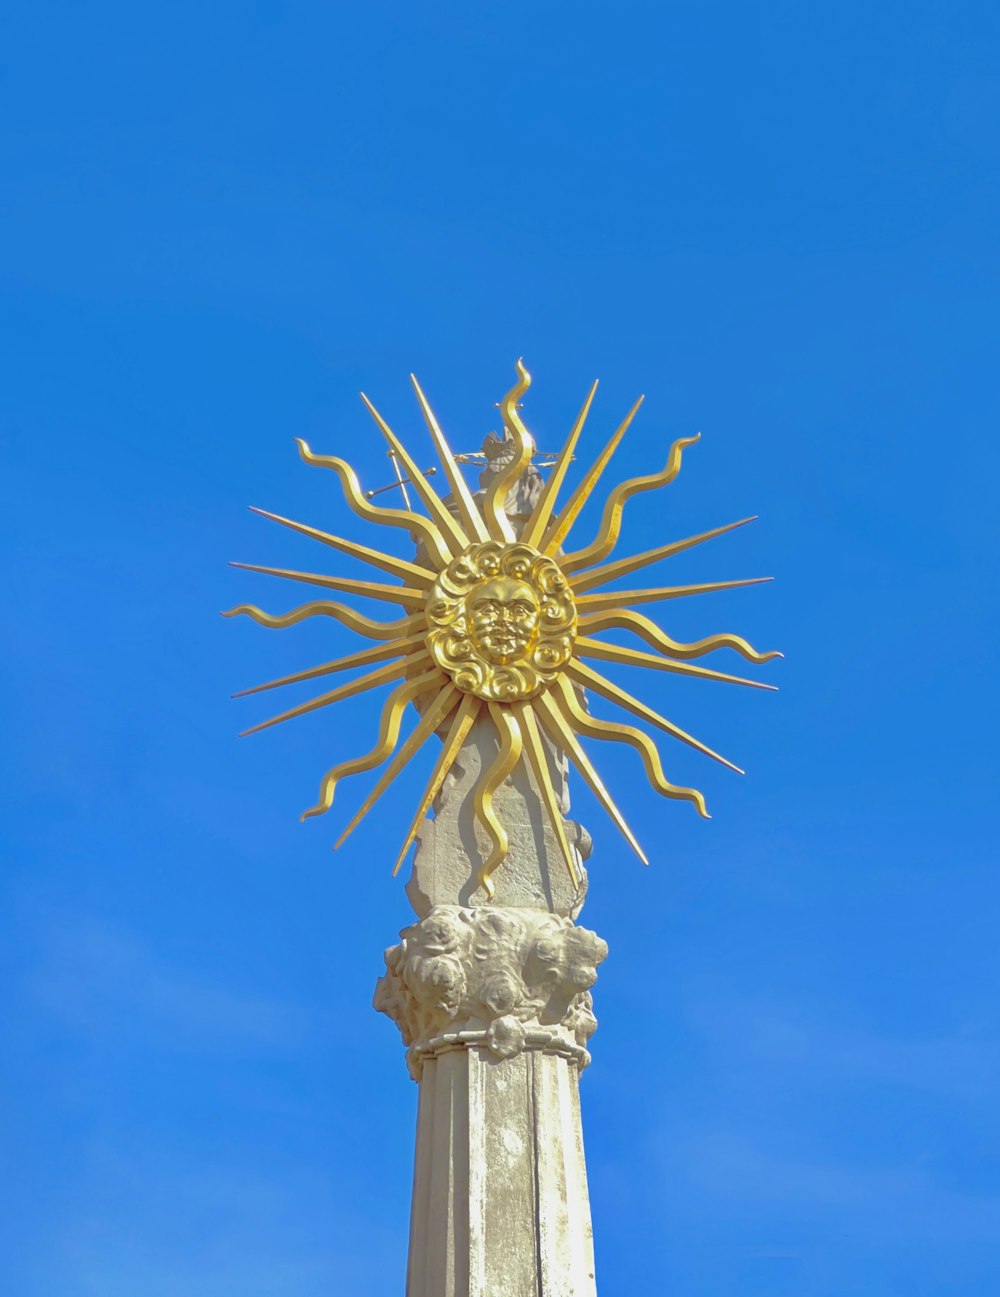 その上に太陽を乗せた彫像